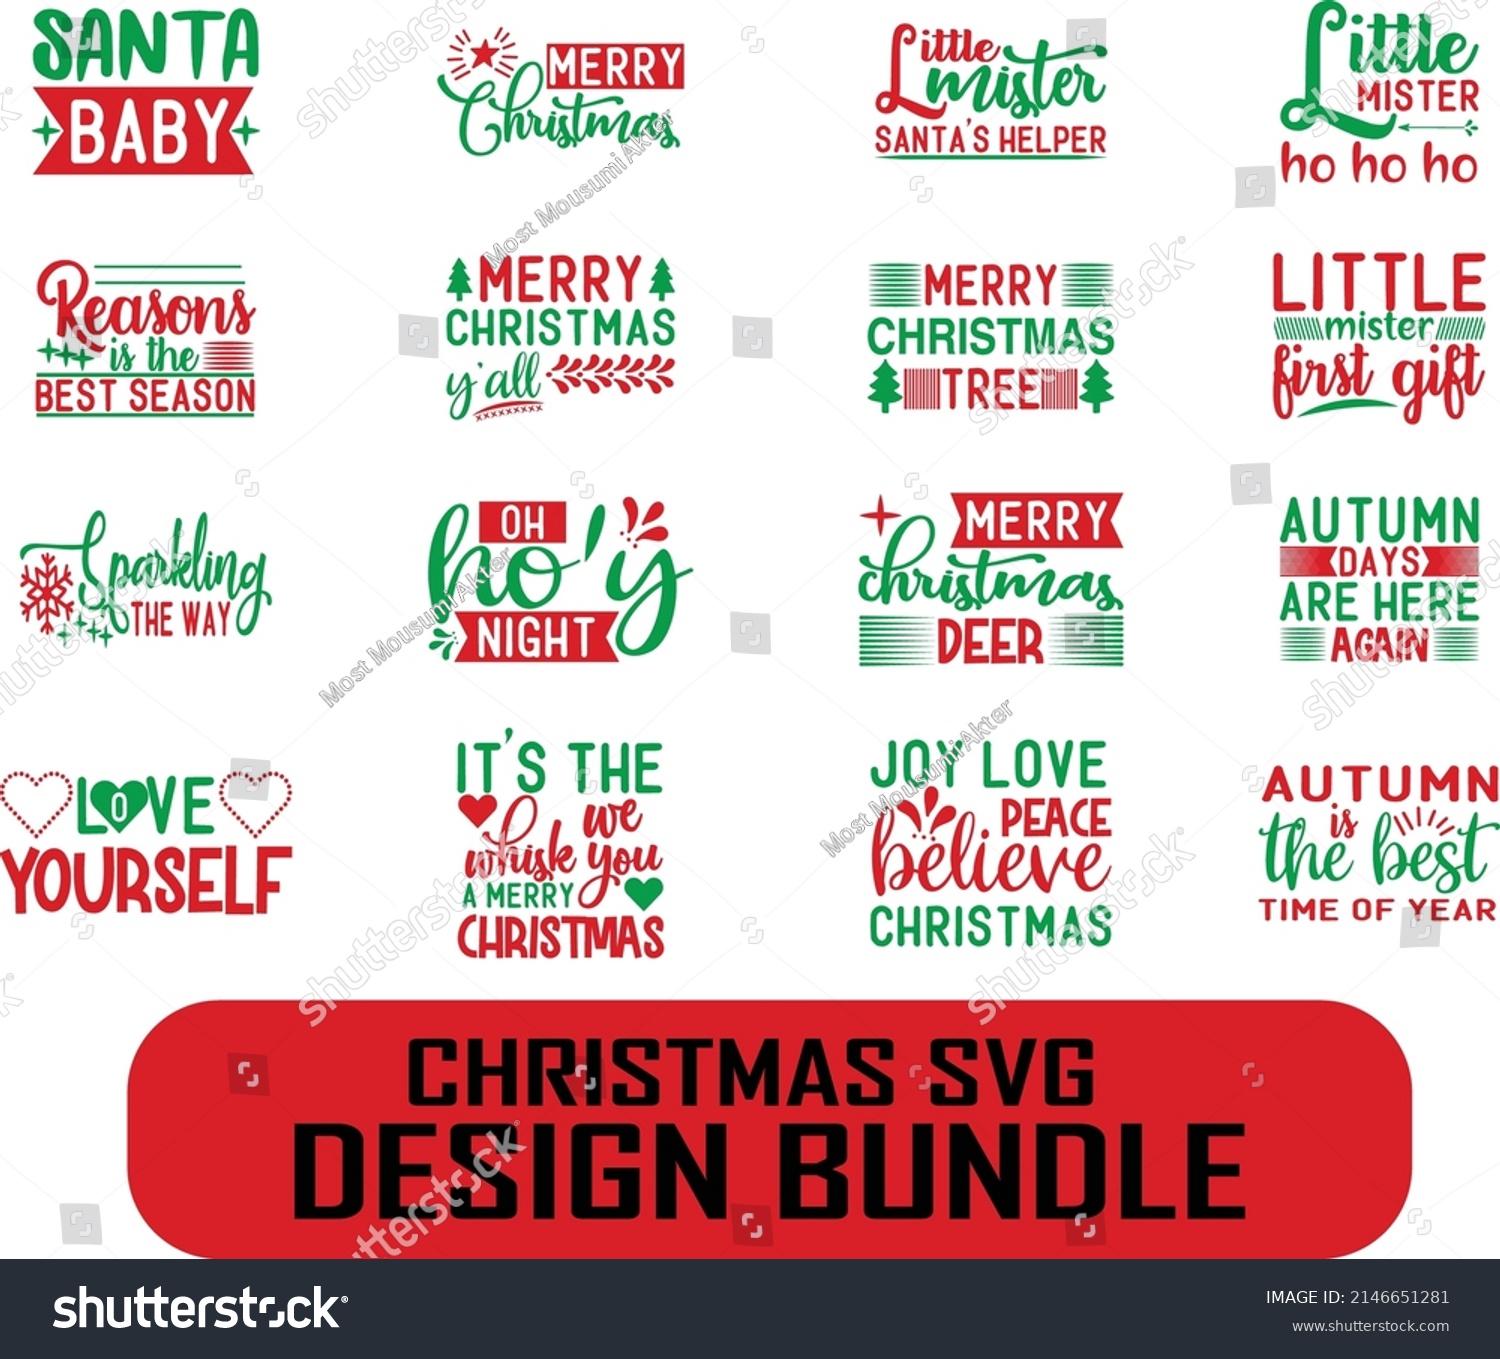 SVG of Christmas SVG design bundle. Christmas SVG t shirt design. svg